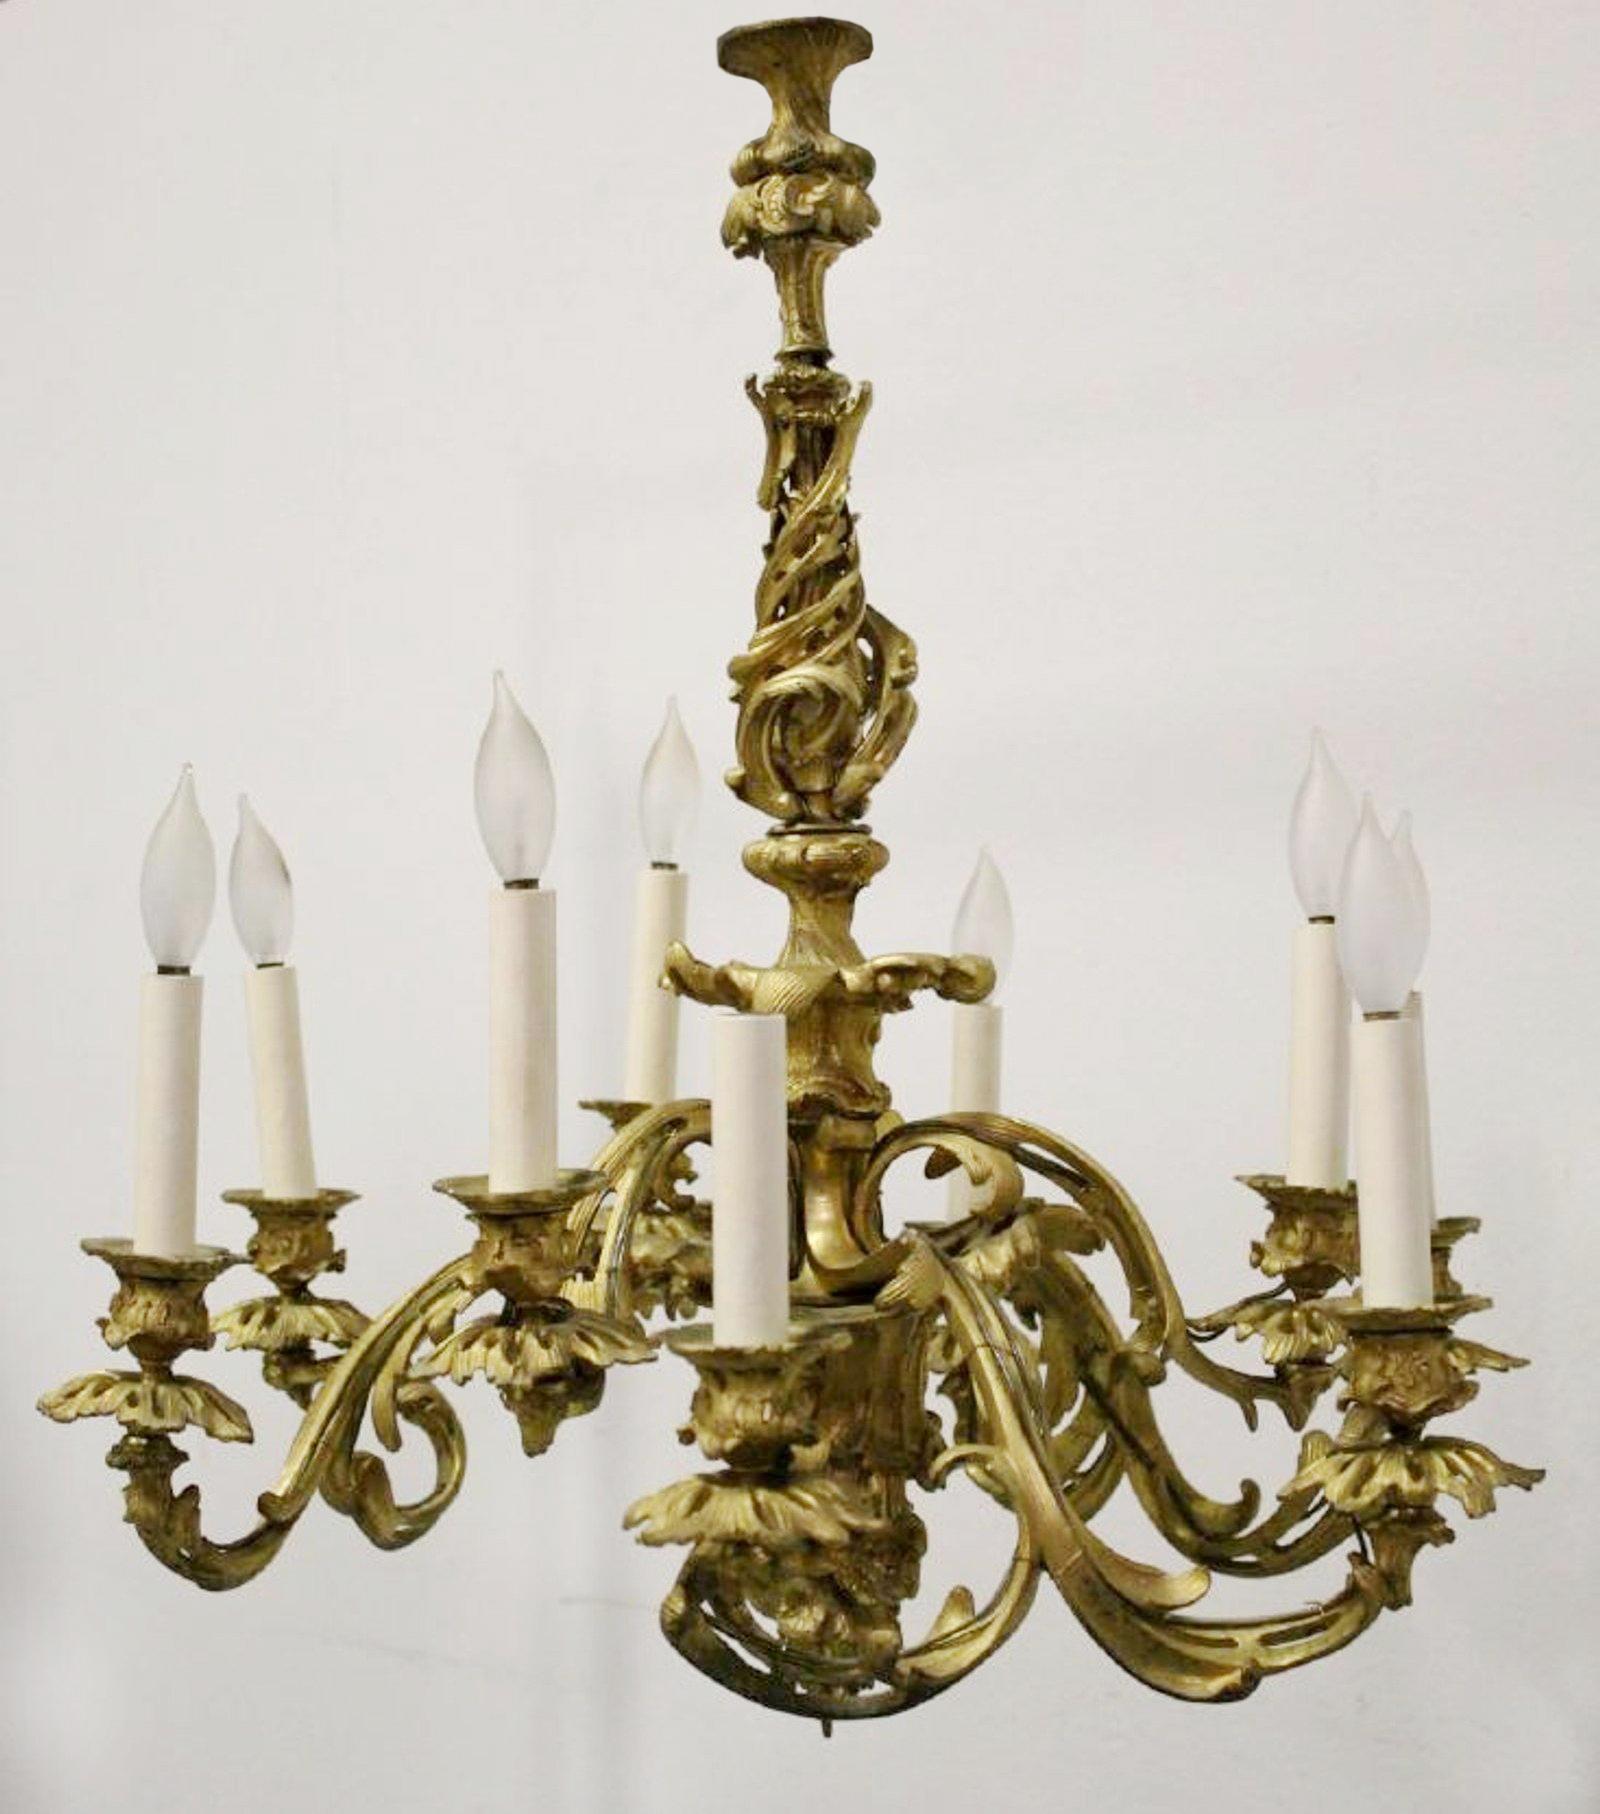 Signierter Ormolu-Kronleuchter mit 9 Lichtern im Louis-XV-Stil, 19. Jahrhundert (Französisch)